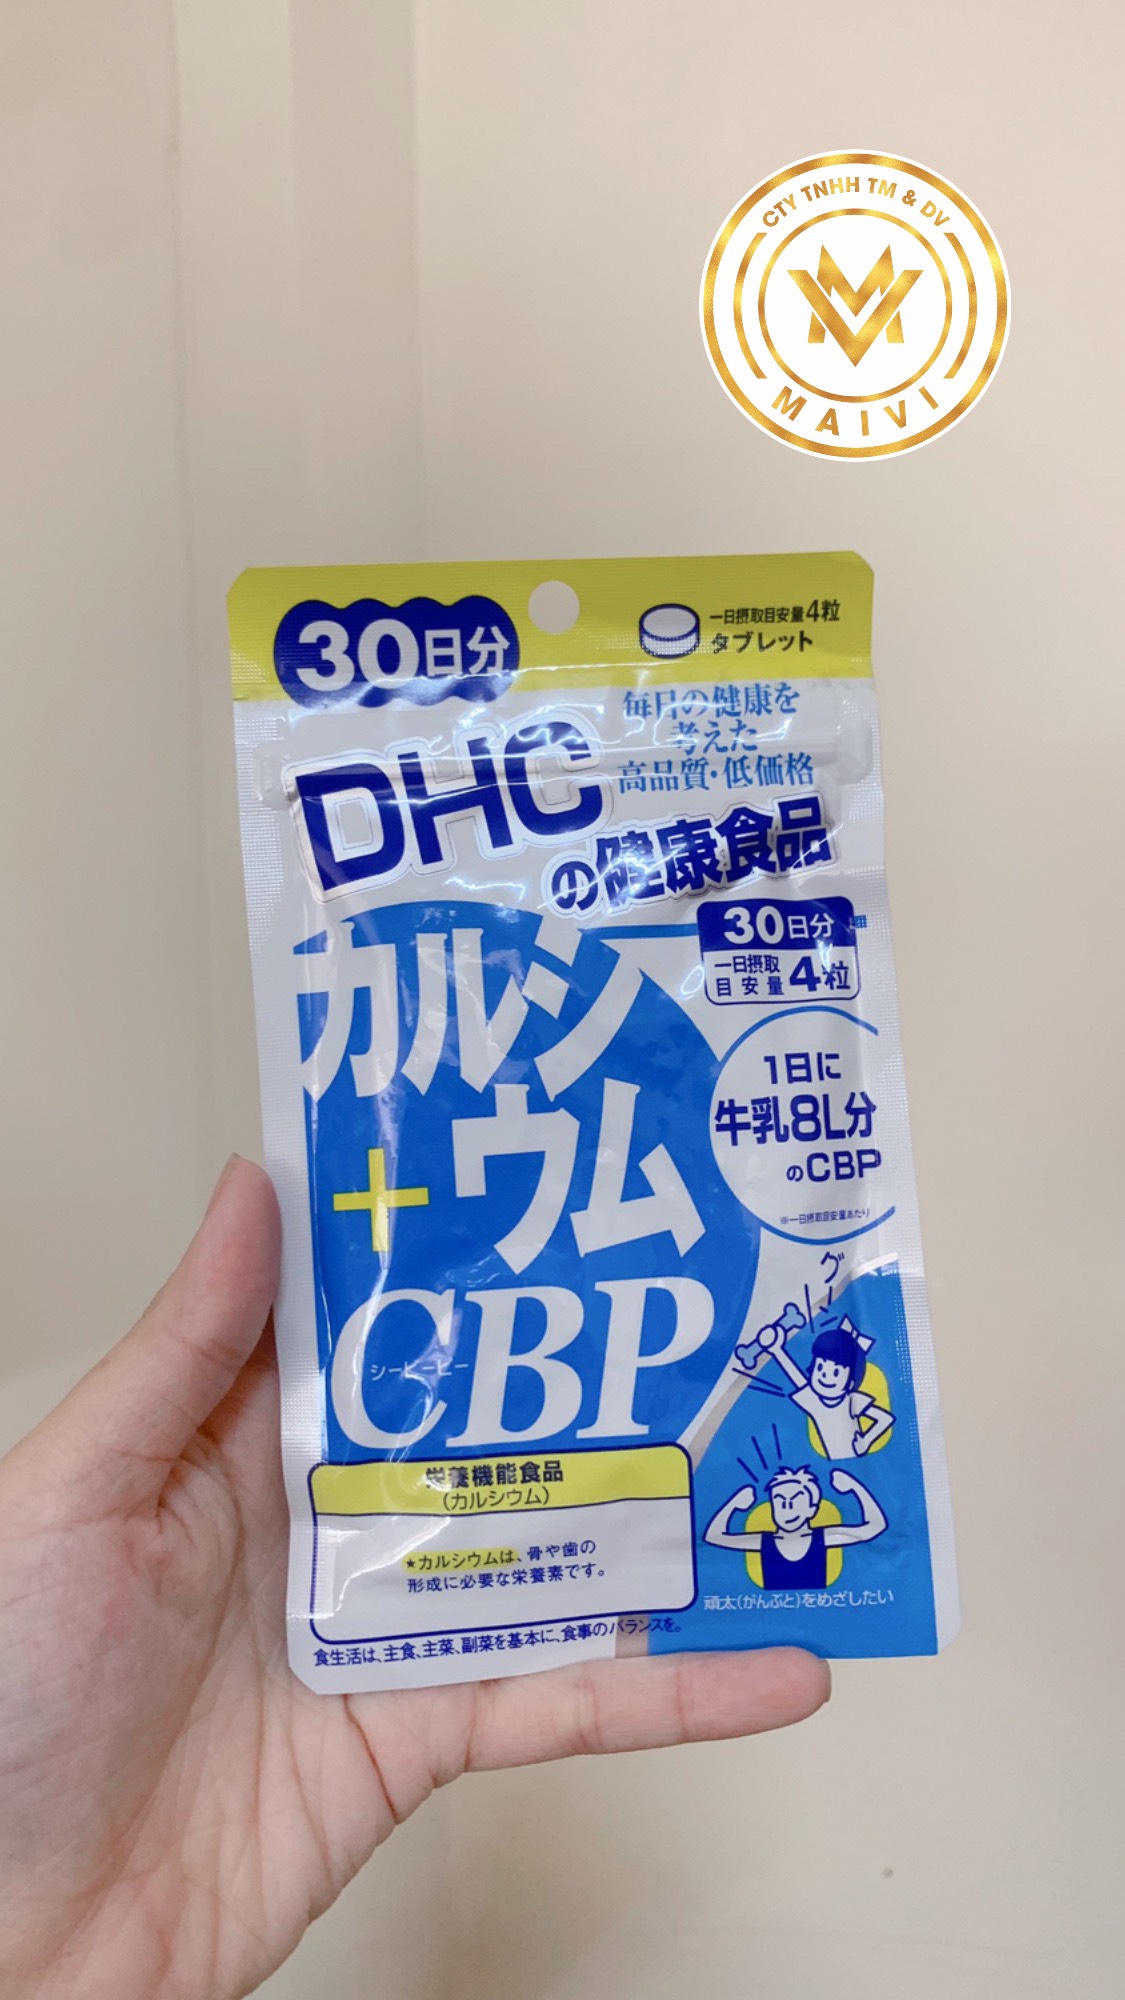 Thực phẩm bảo vệ sức khỏe DHC Calcium + CBP 30 ngày ( hàng chính hãng, có tem phụ )